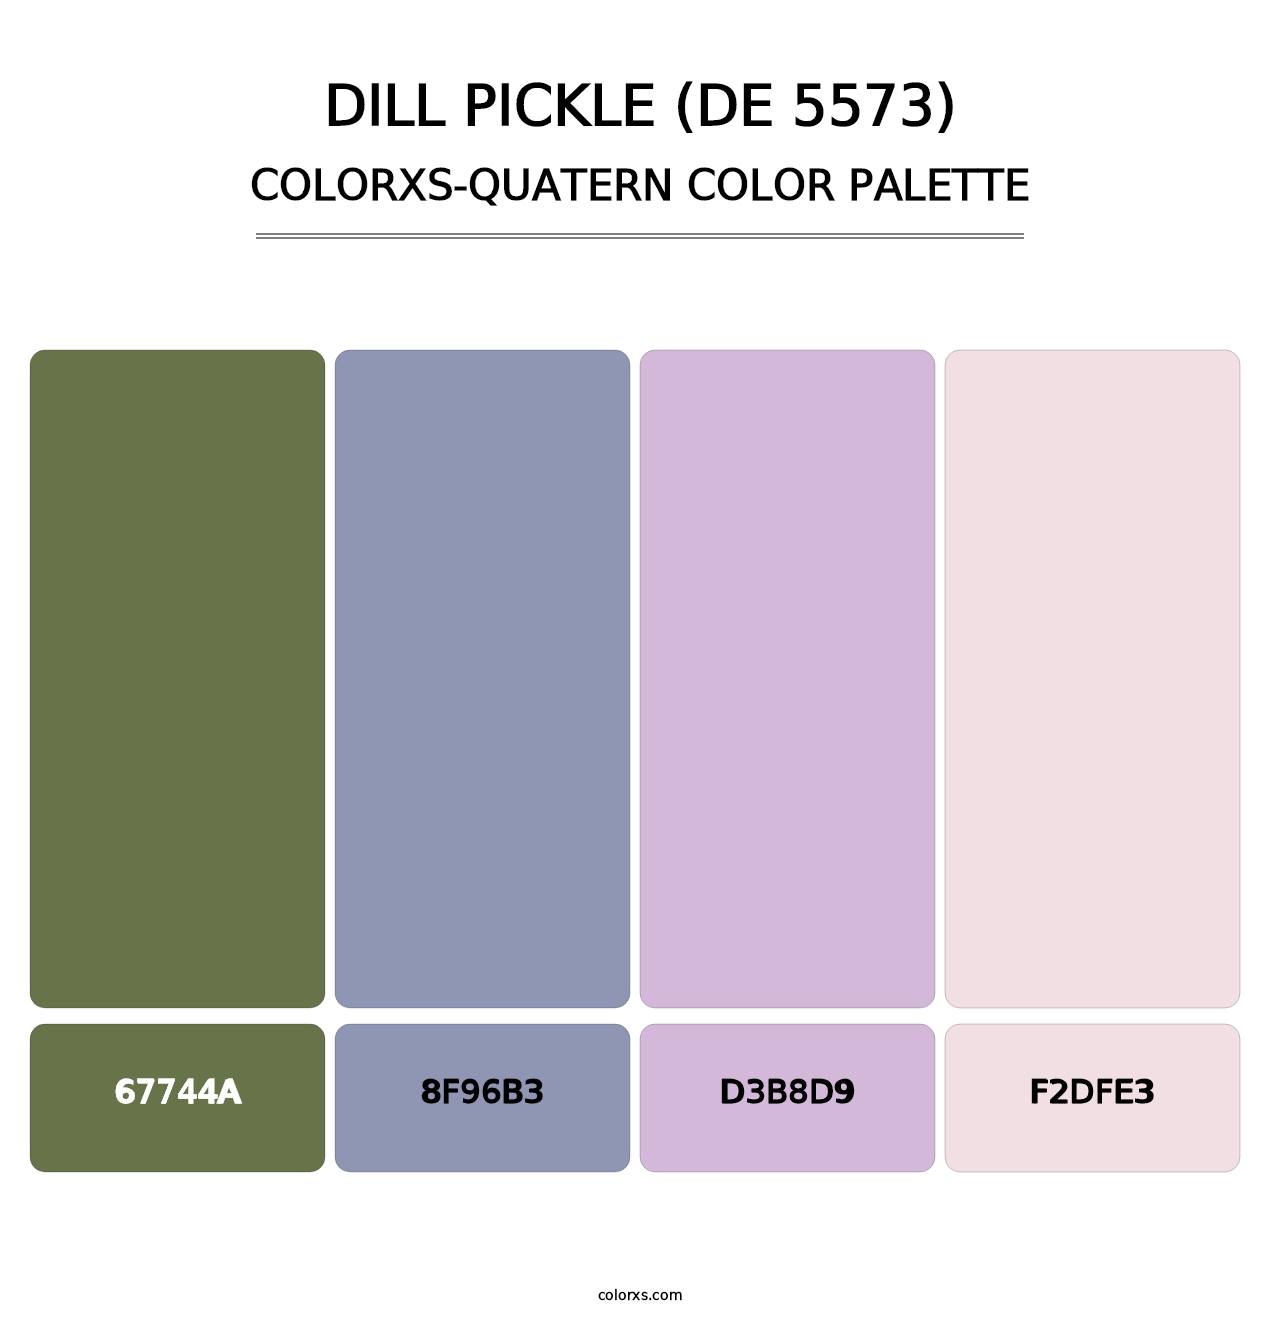 Dill Pickle (DE 5573) - Colorxs Quatern Palette